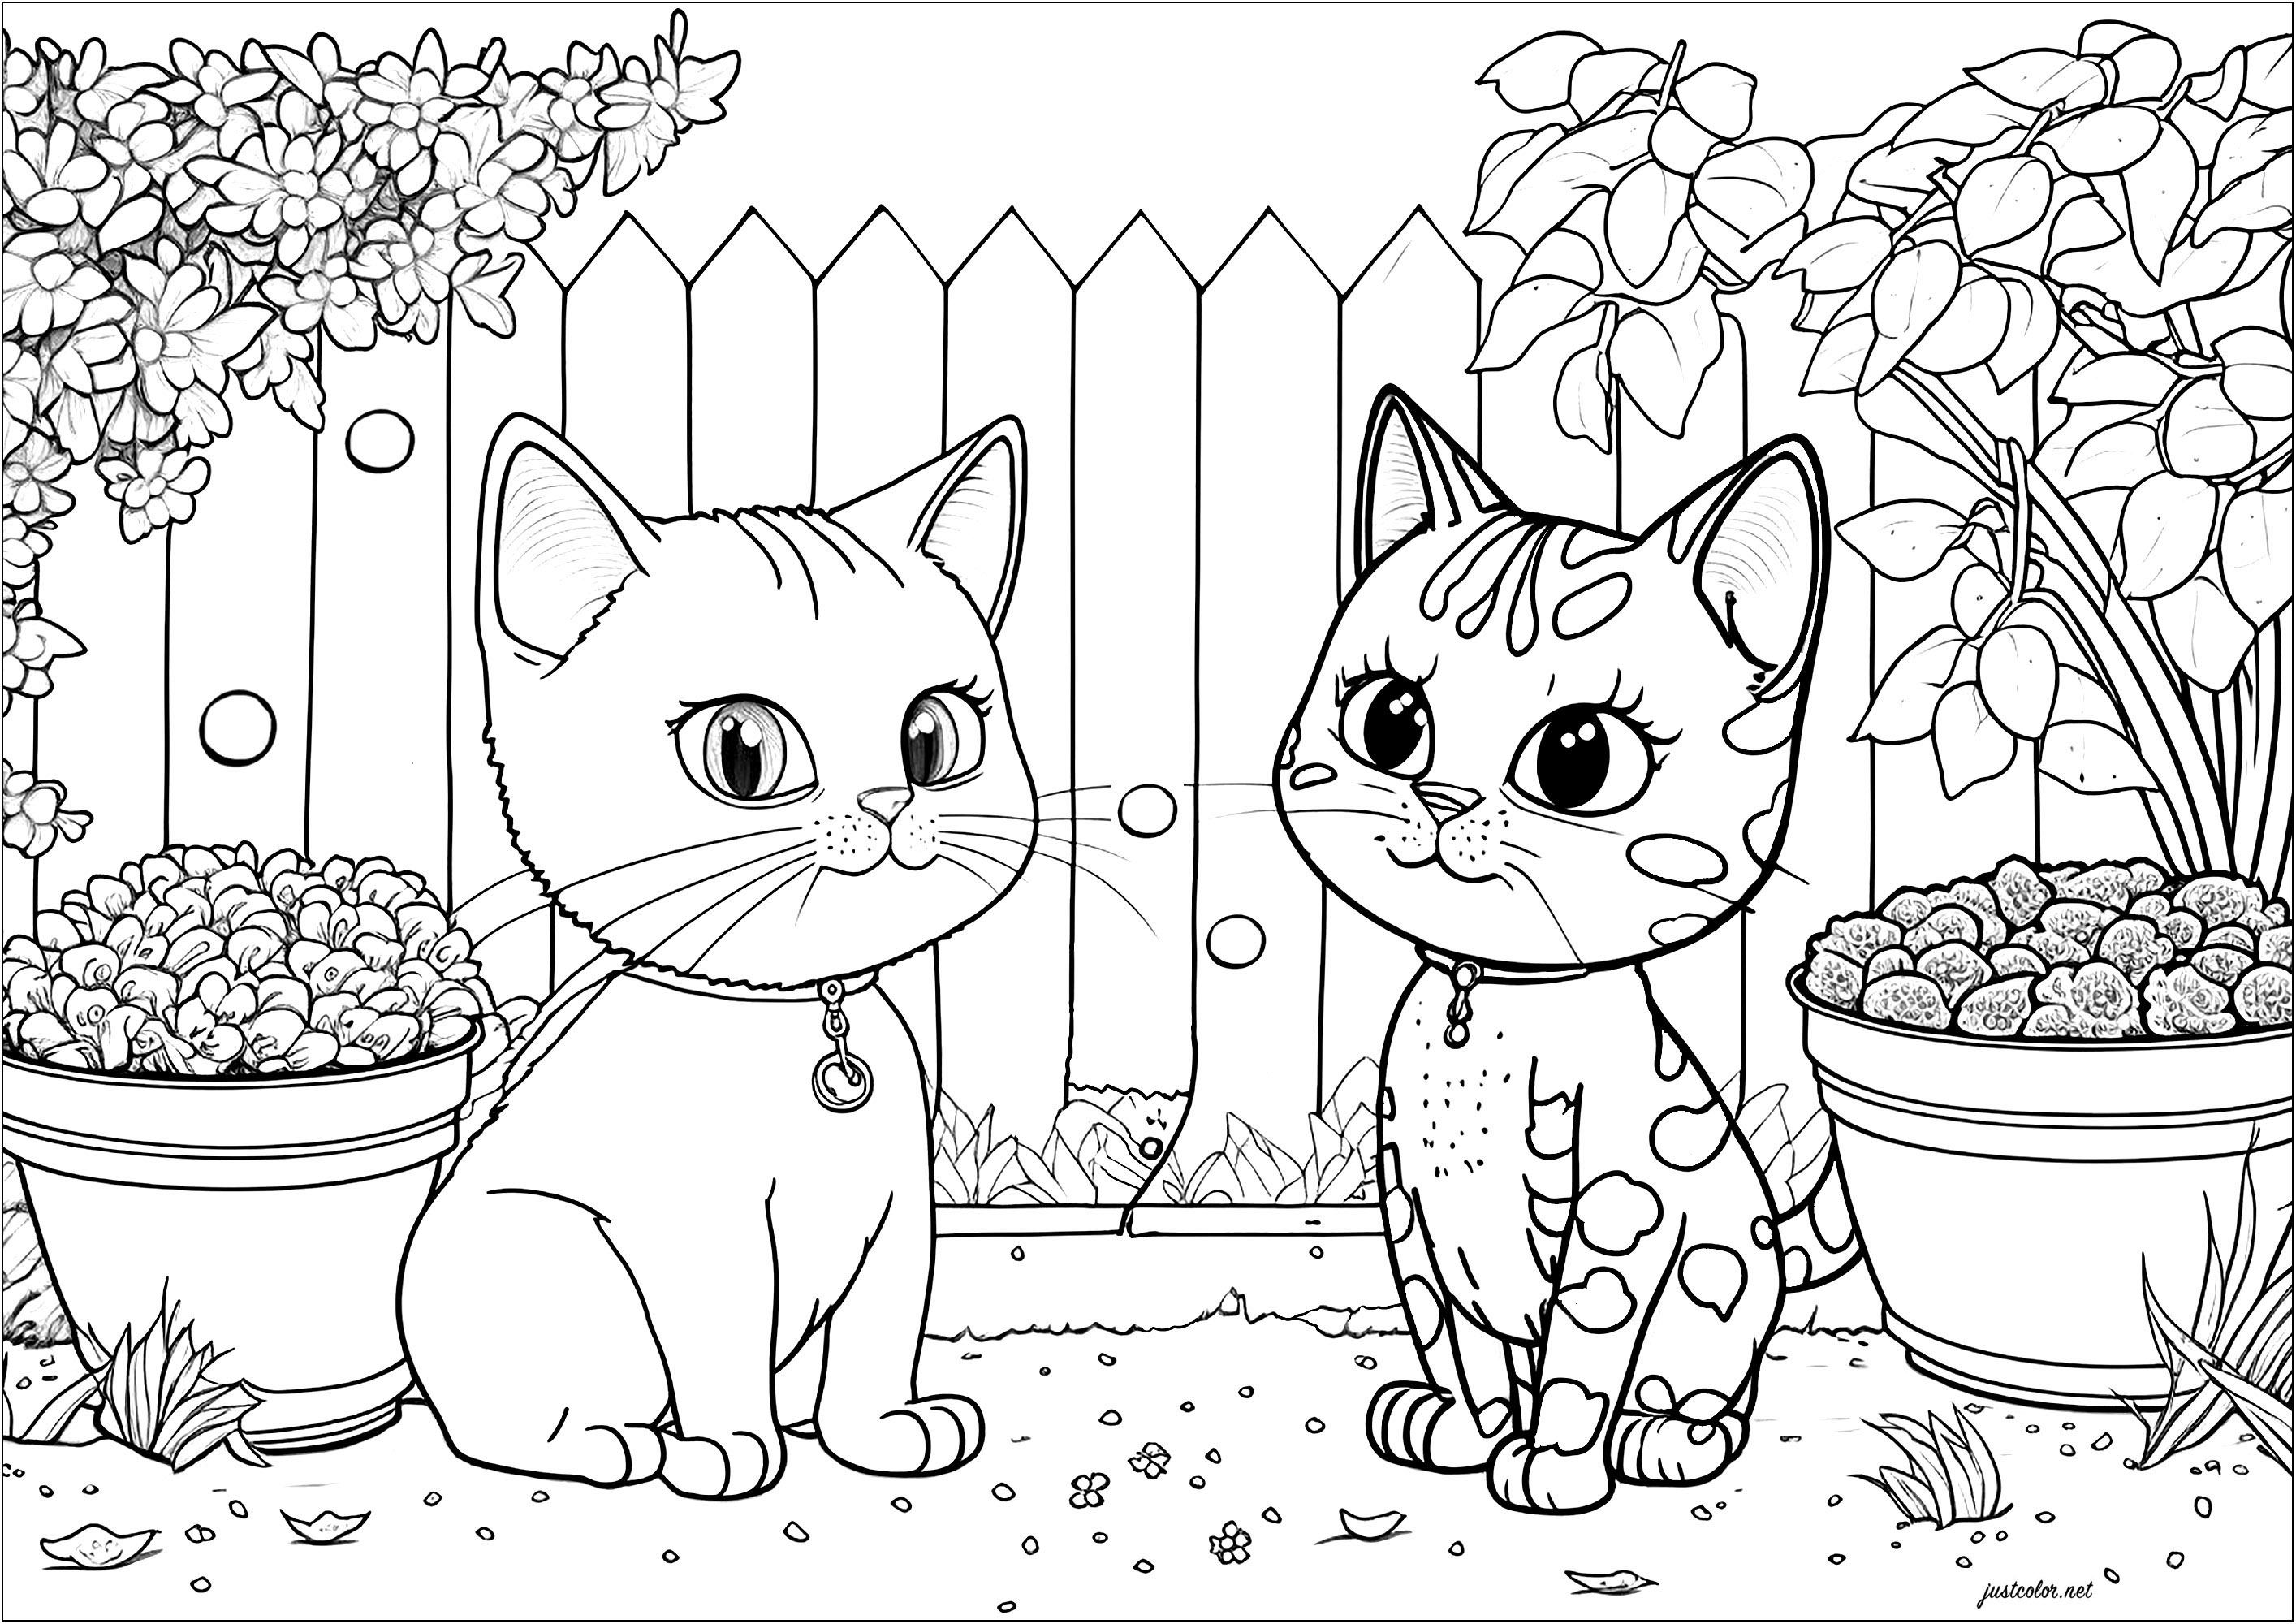 Deux jolis et très sages chatons, dans un beau jardin. Un coloriage assez simple mais qui sera sans doute très agréable à réaliser, car les détails végétaux du jardin sont assez nombreux.